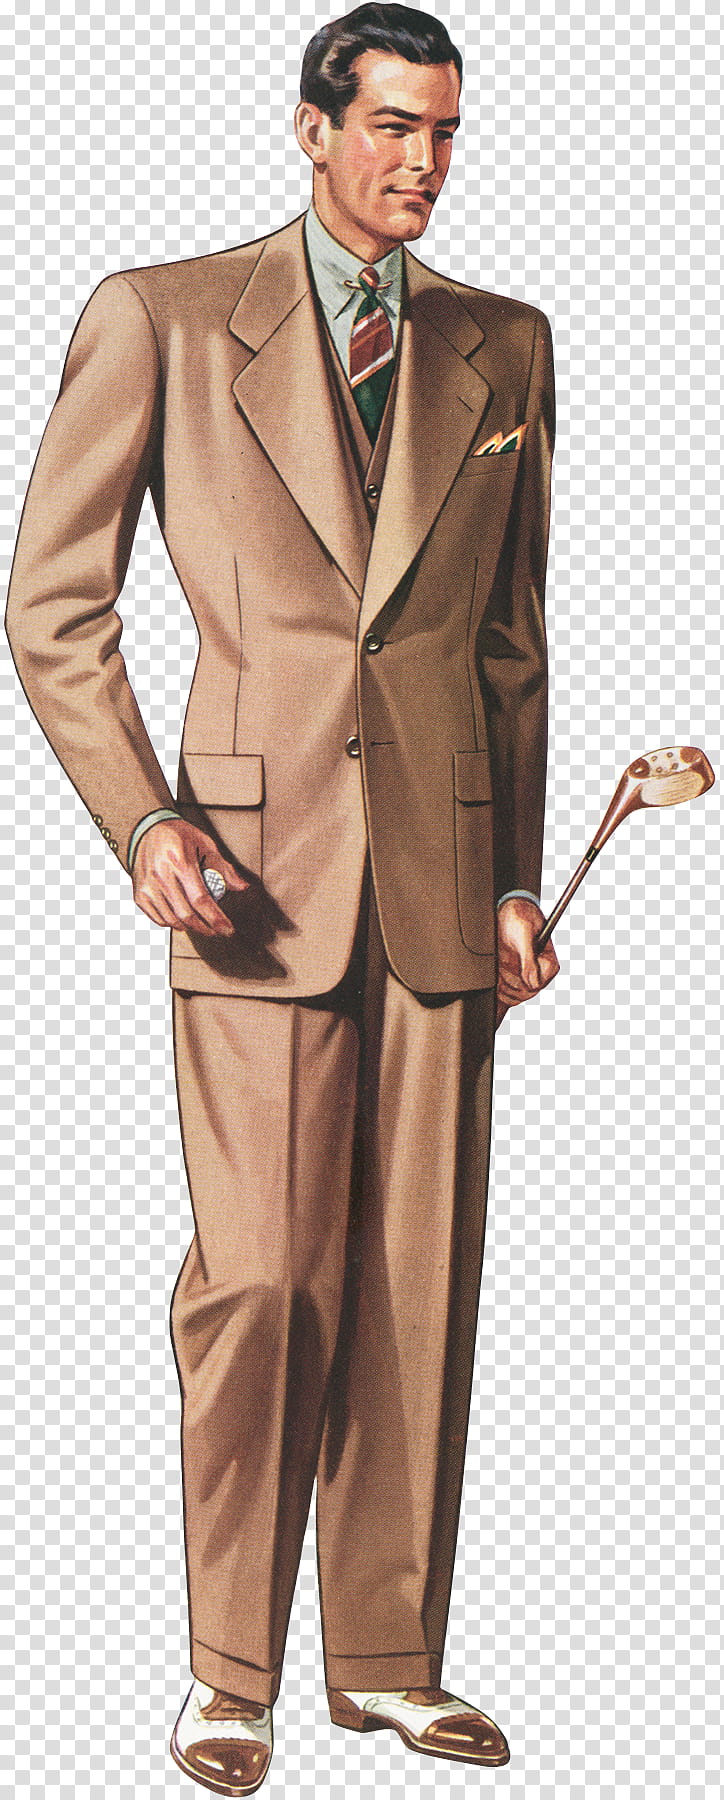 Vintage, Vintage Clothing, Fashion, Suit, Hat, Necktie, Man, Tailor transparent background PNG clipart